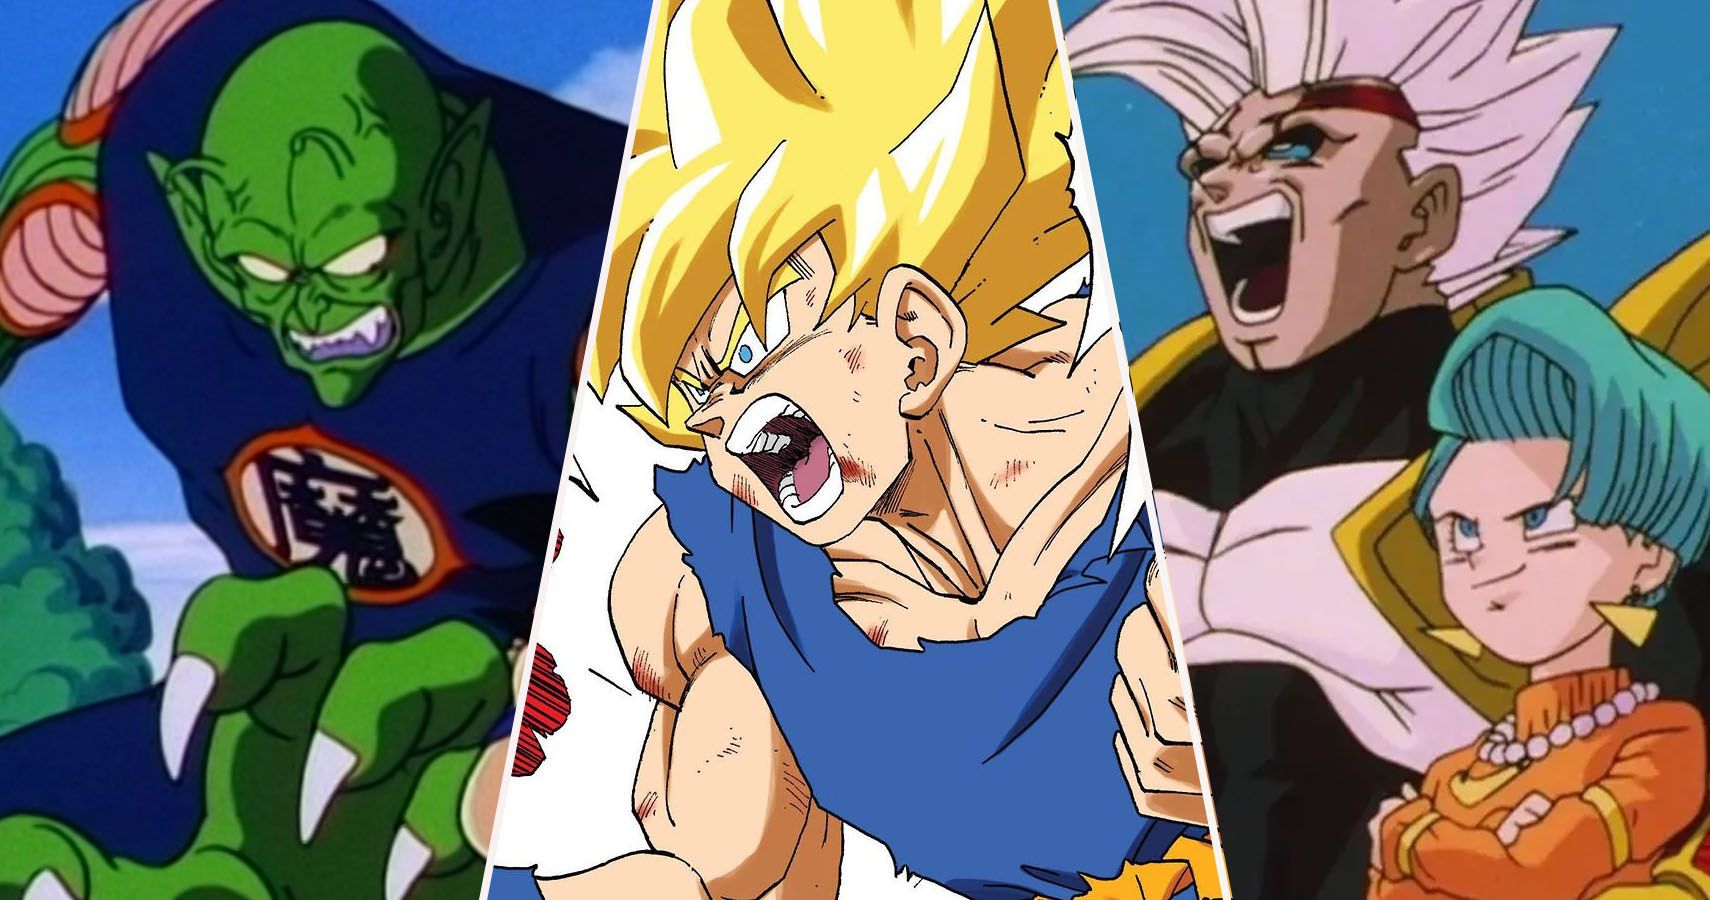 Demon King Piccolo, Super Saiyan Goku, Baby Vegeta, and Bulma